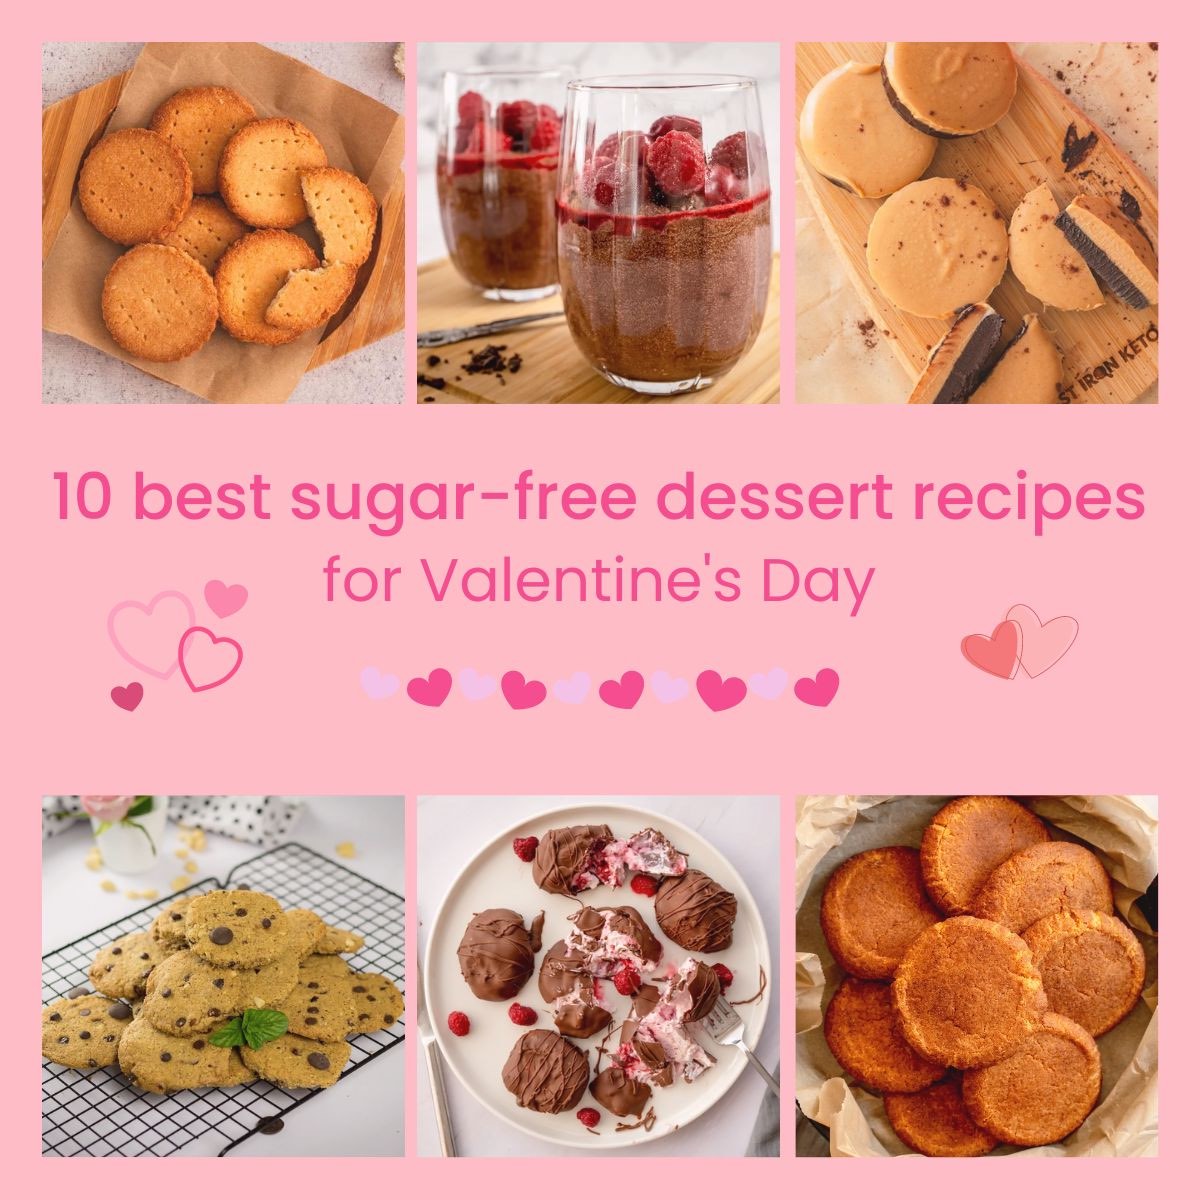 10 Best Sugar-Free Dessert Recipes for Valentine’s Day